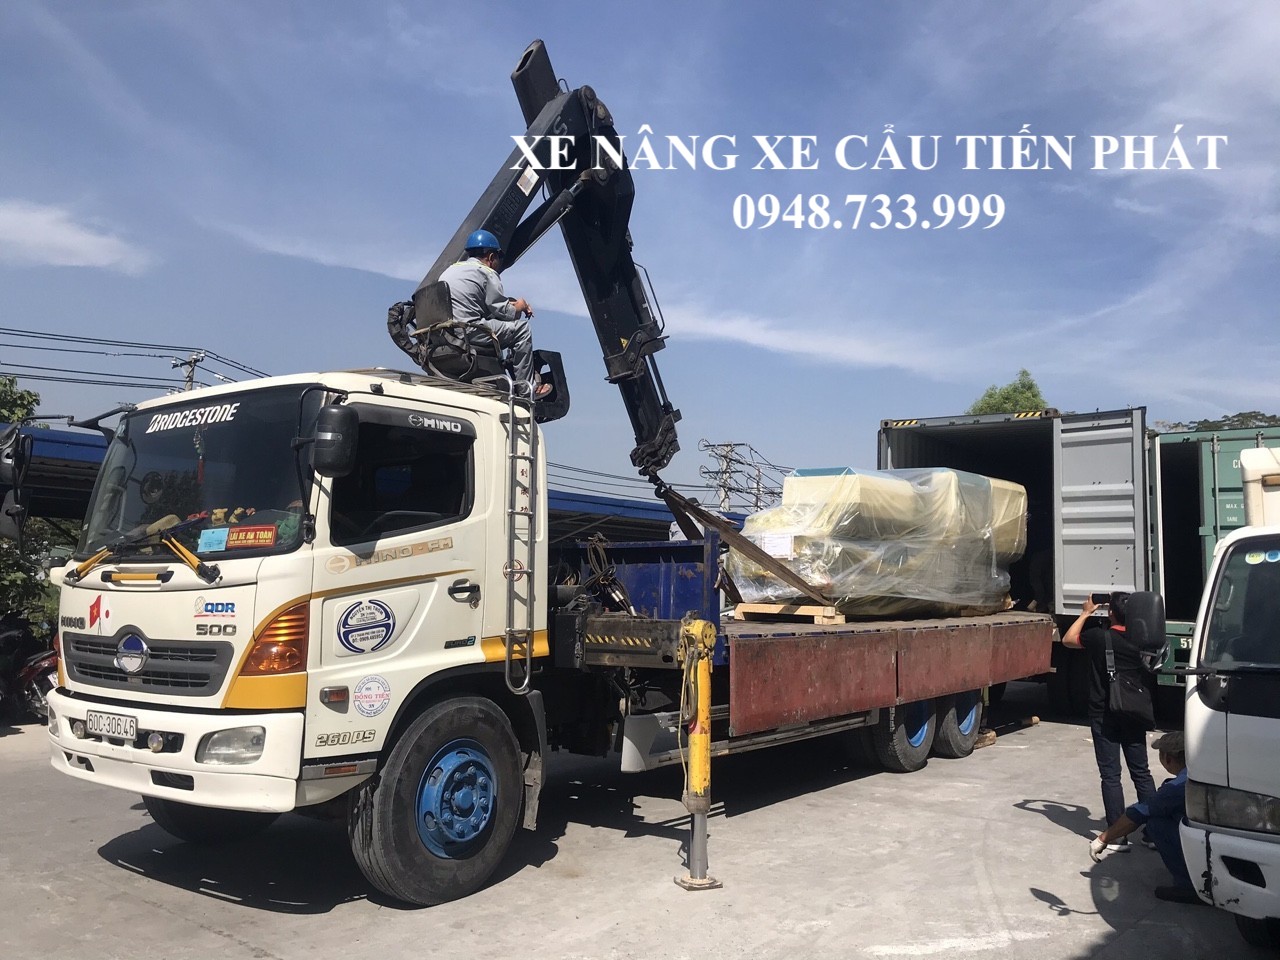 Cho thuê xe cẩu thùng rút container tại Đồng Nai 0948.733.999